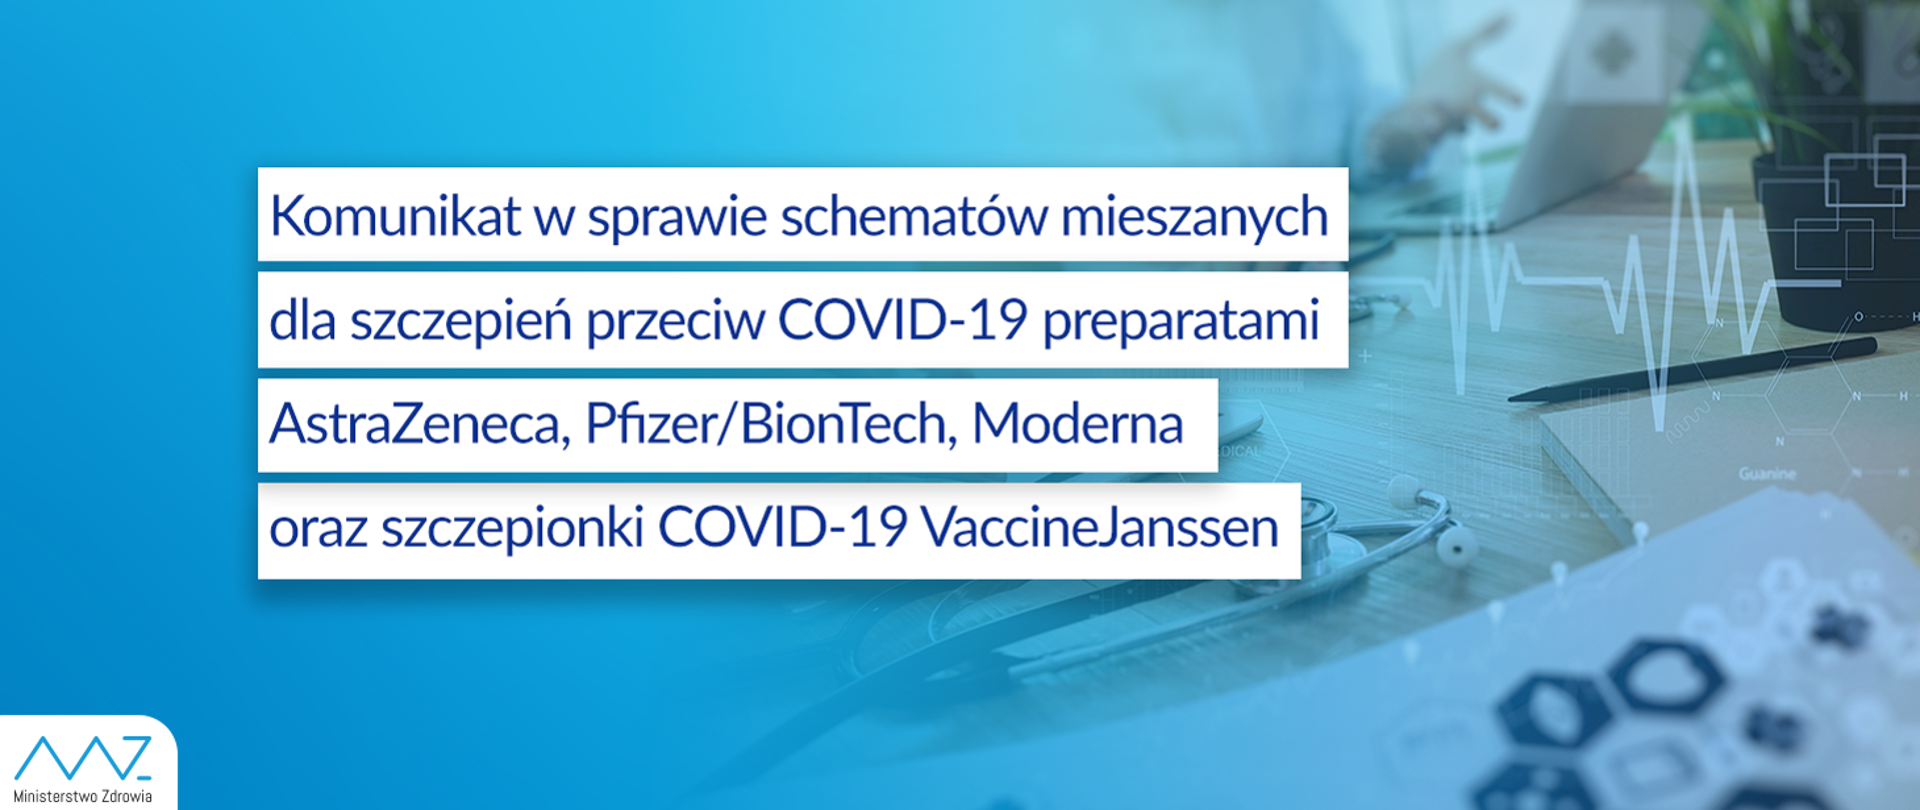 Komunikat nr 17 Ministra Zdrowia w sprawie schematów mieszanych dla szczepień przeciw COVID-19